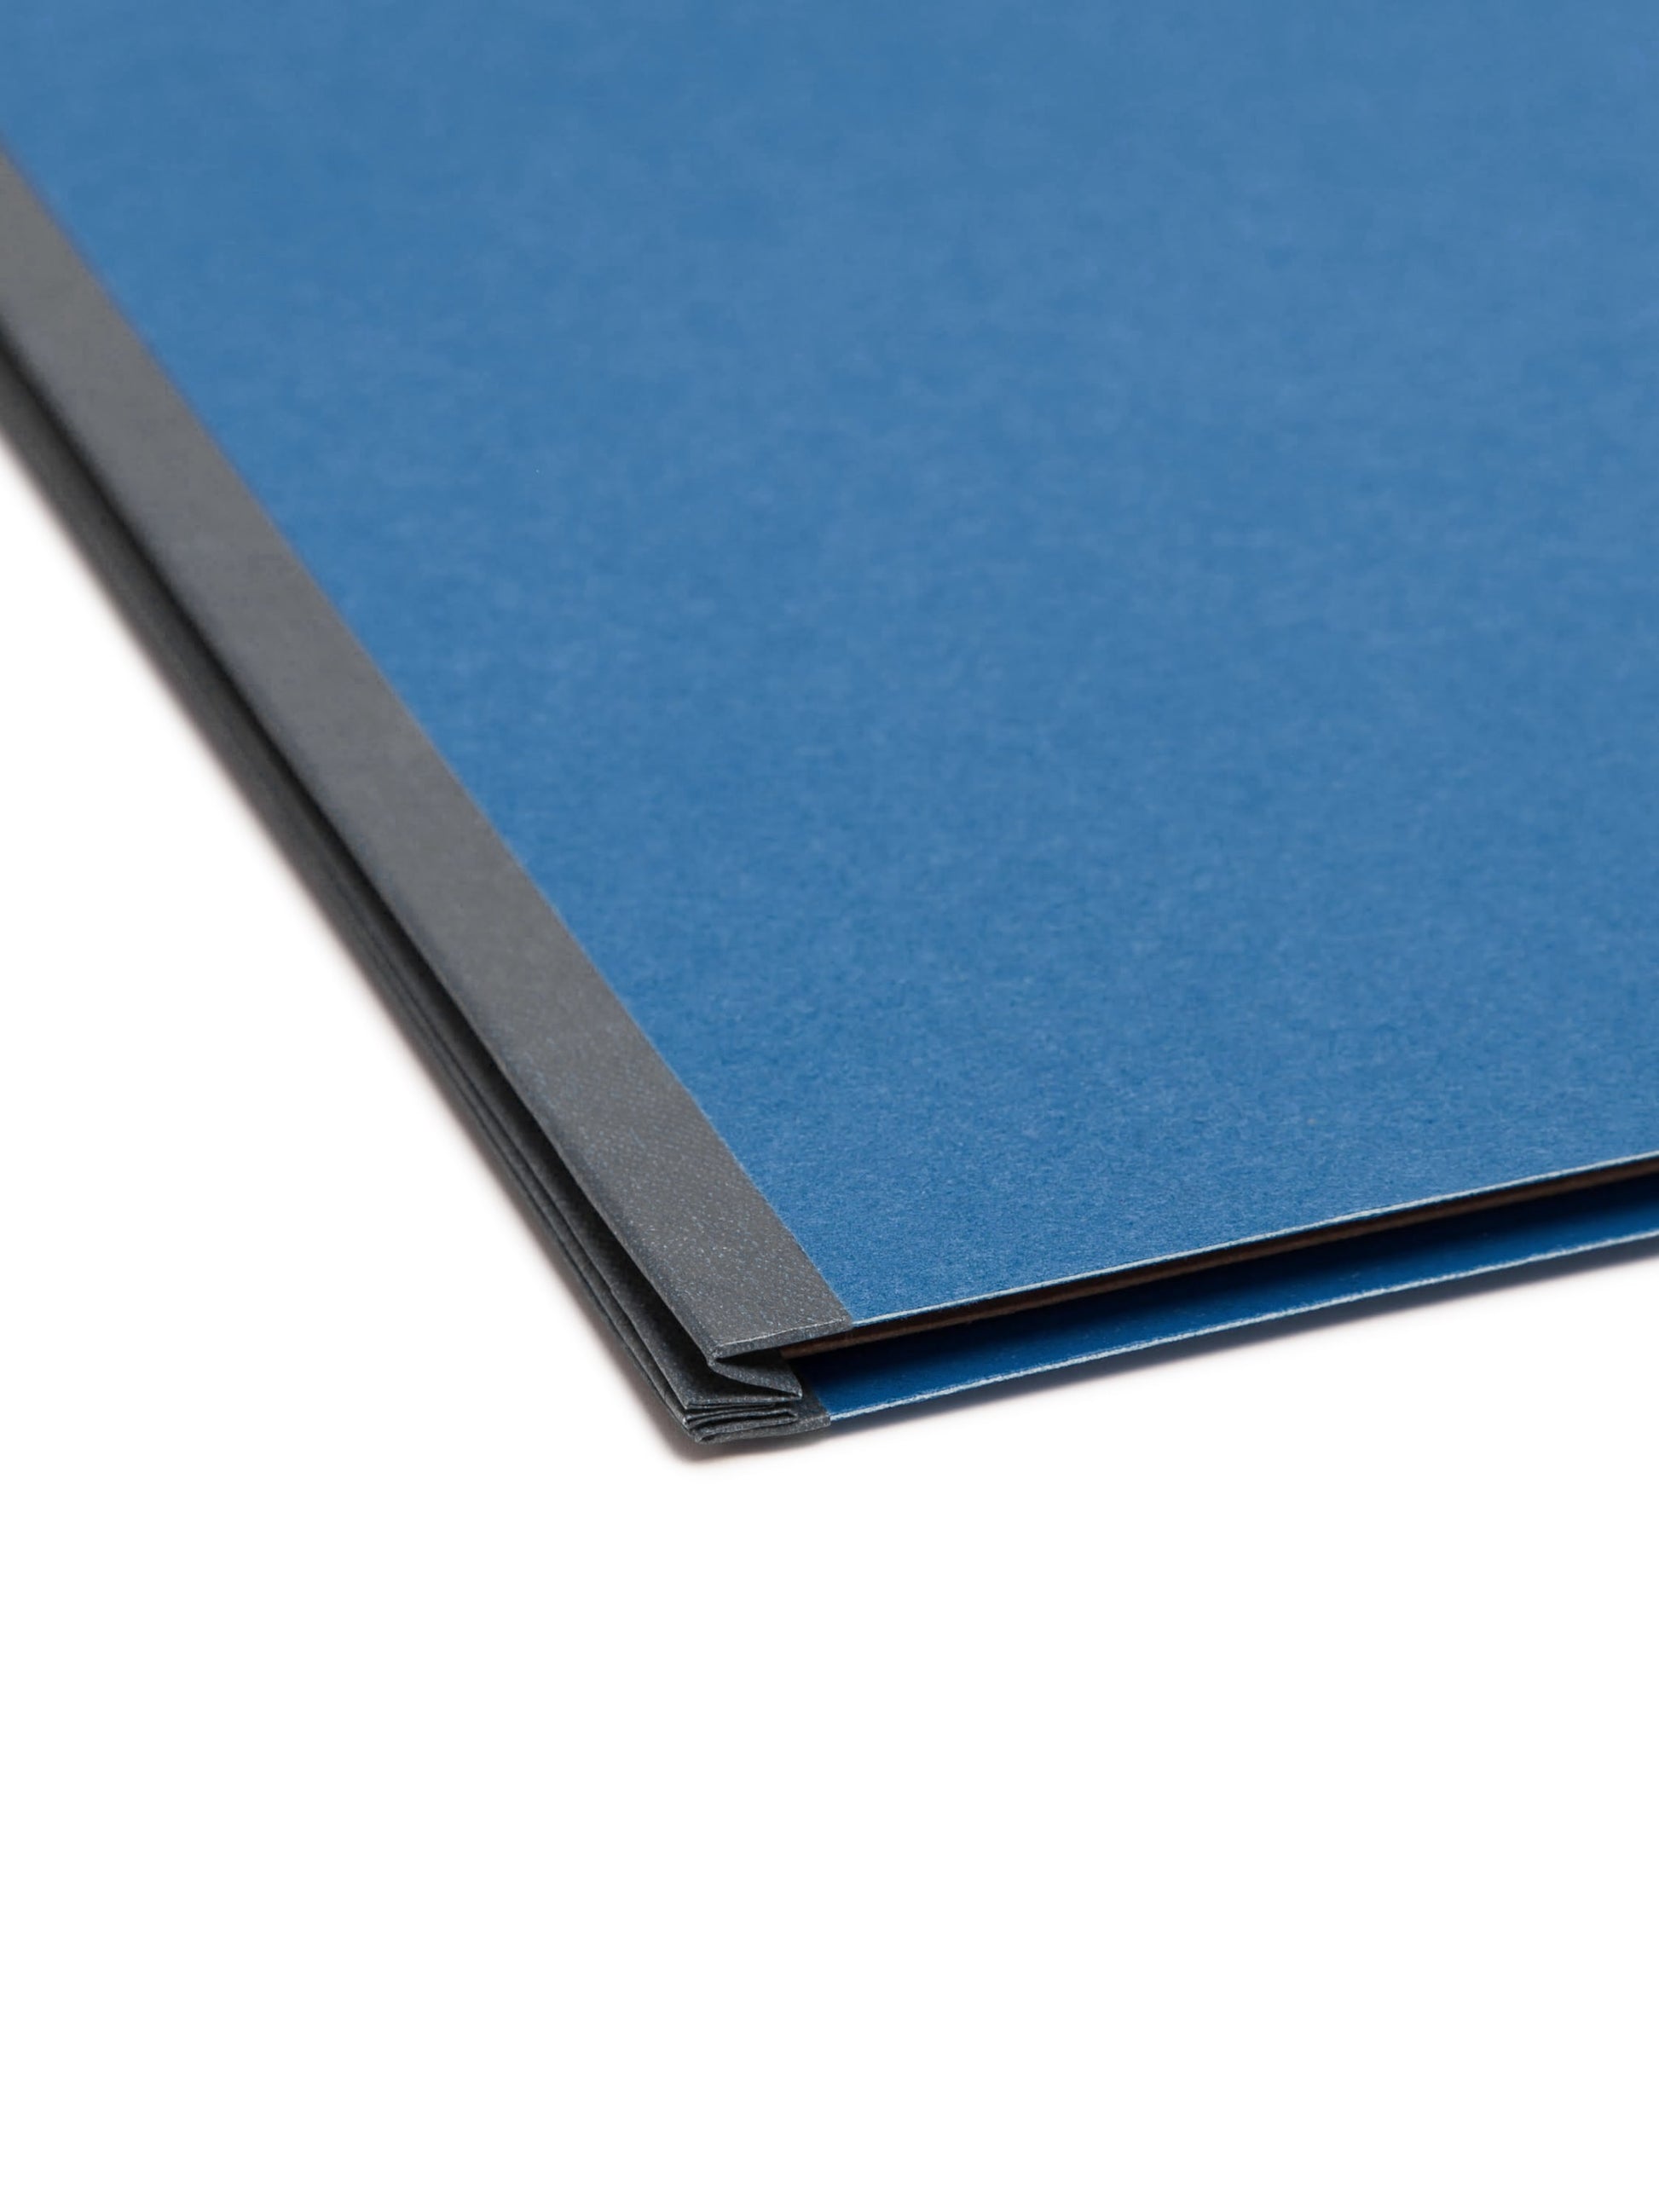 SafeSHIELD® Pressboard Classification File Folders with Pocket Dividers, Dark Blue Color, Letter Size, 